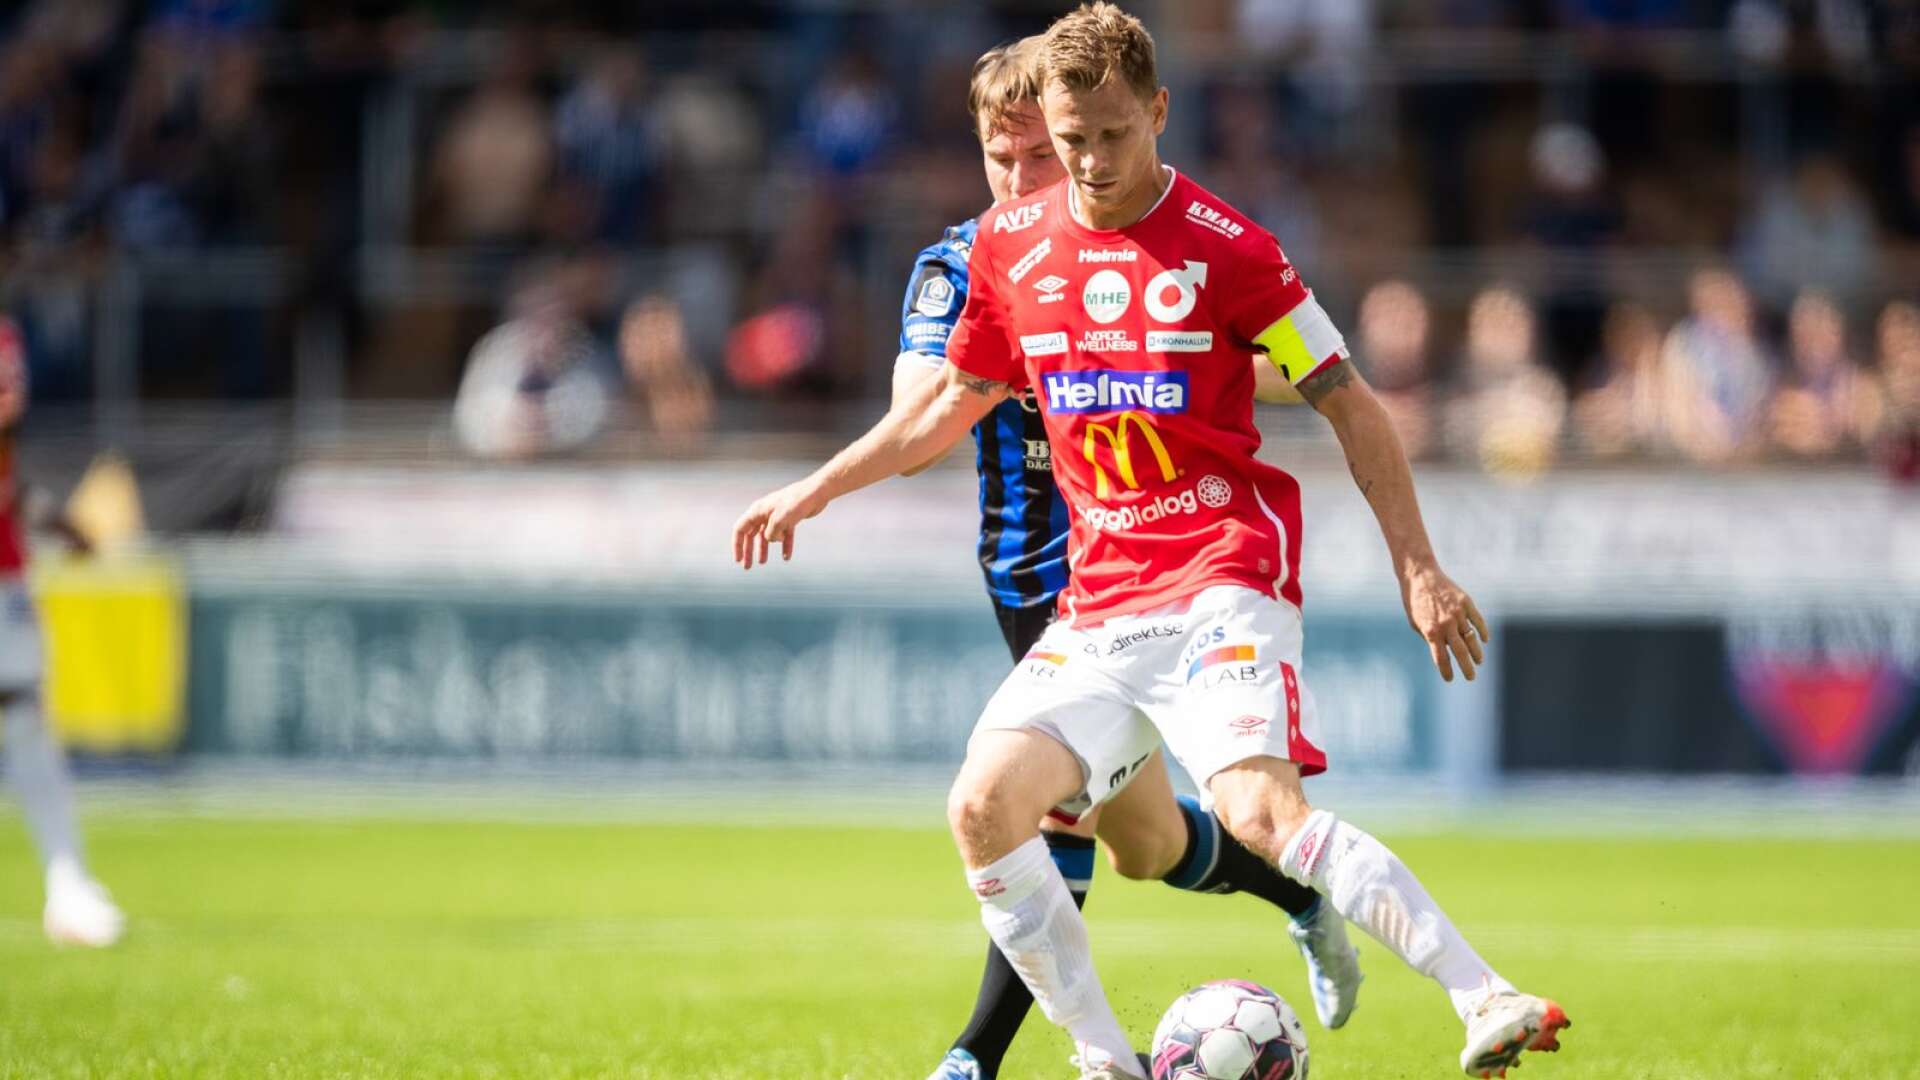 Johan Bertilsson hoppas ha klart med ny klubb i januari. 